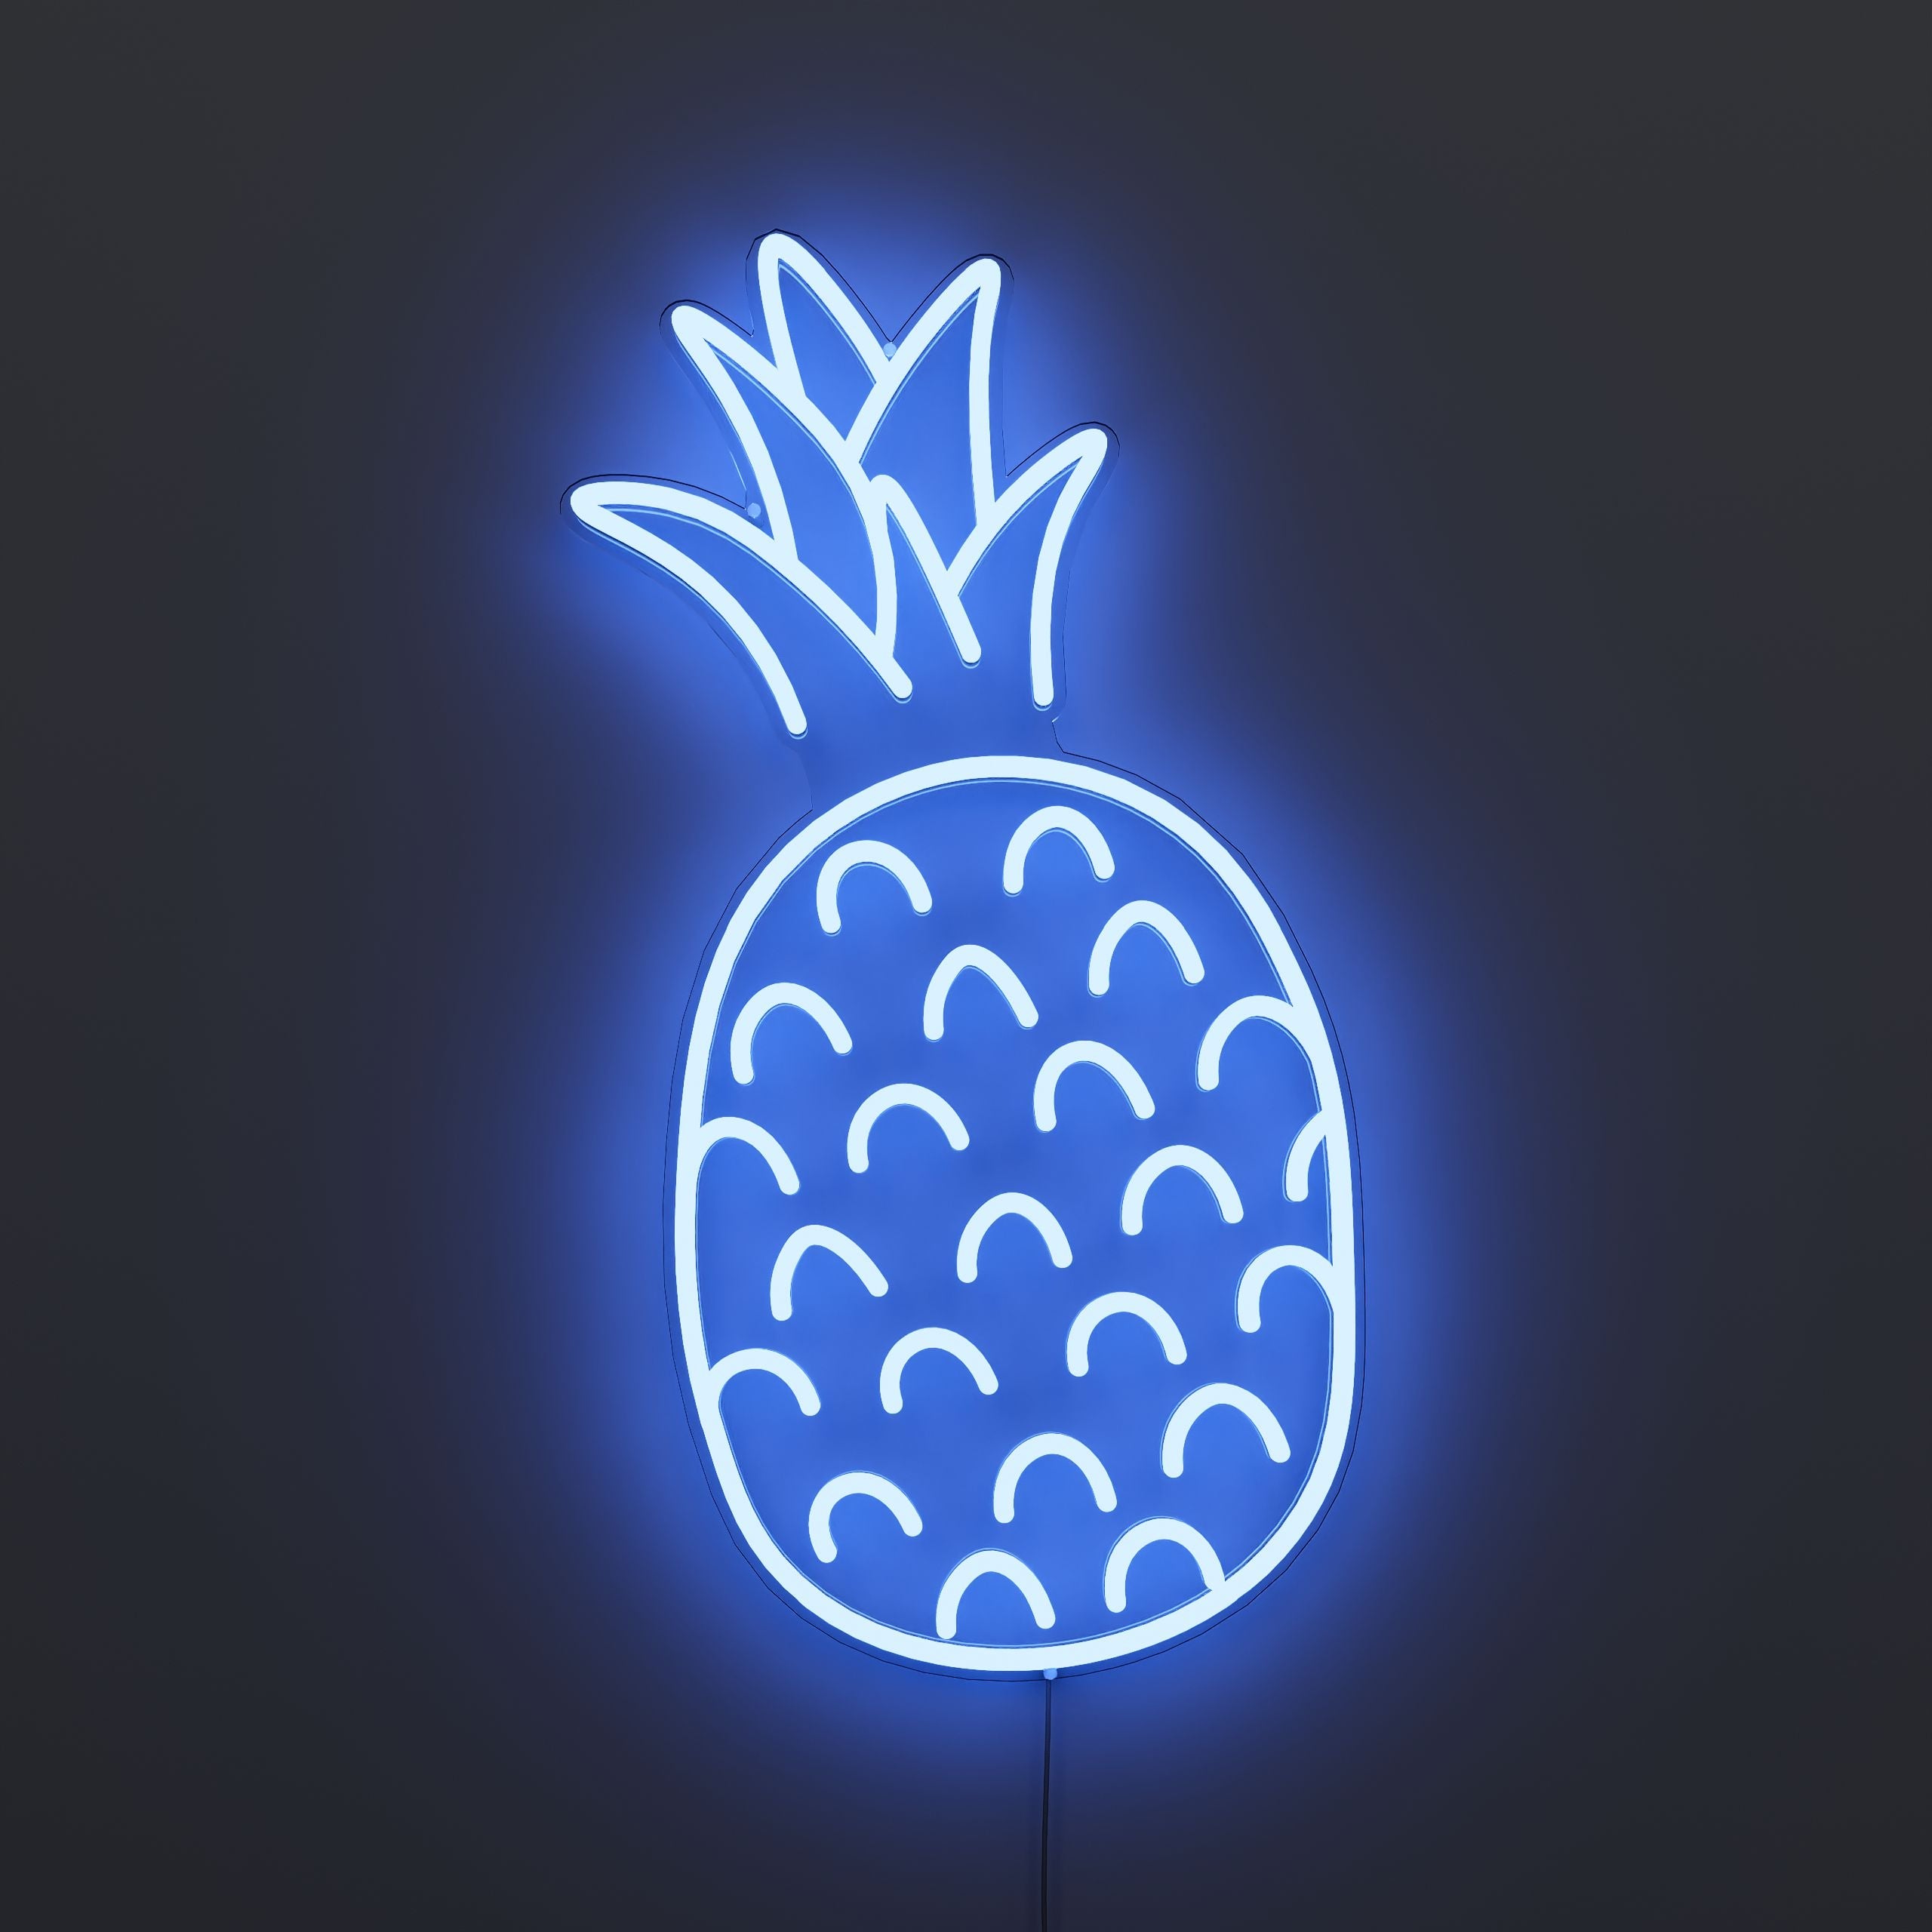 juicy-pineapple-lighting-neon-sign-lite